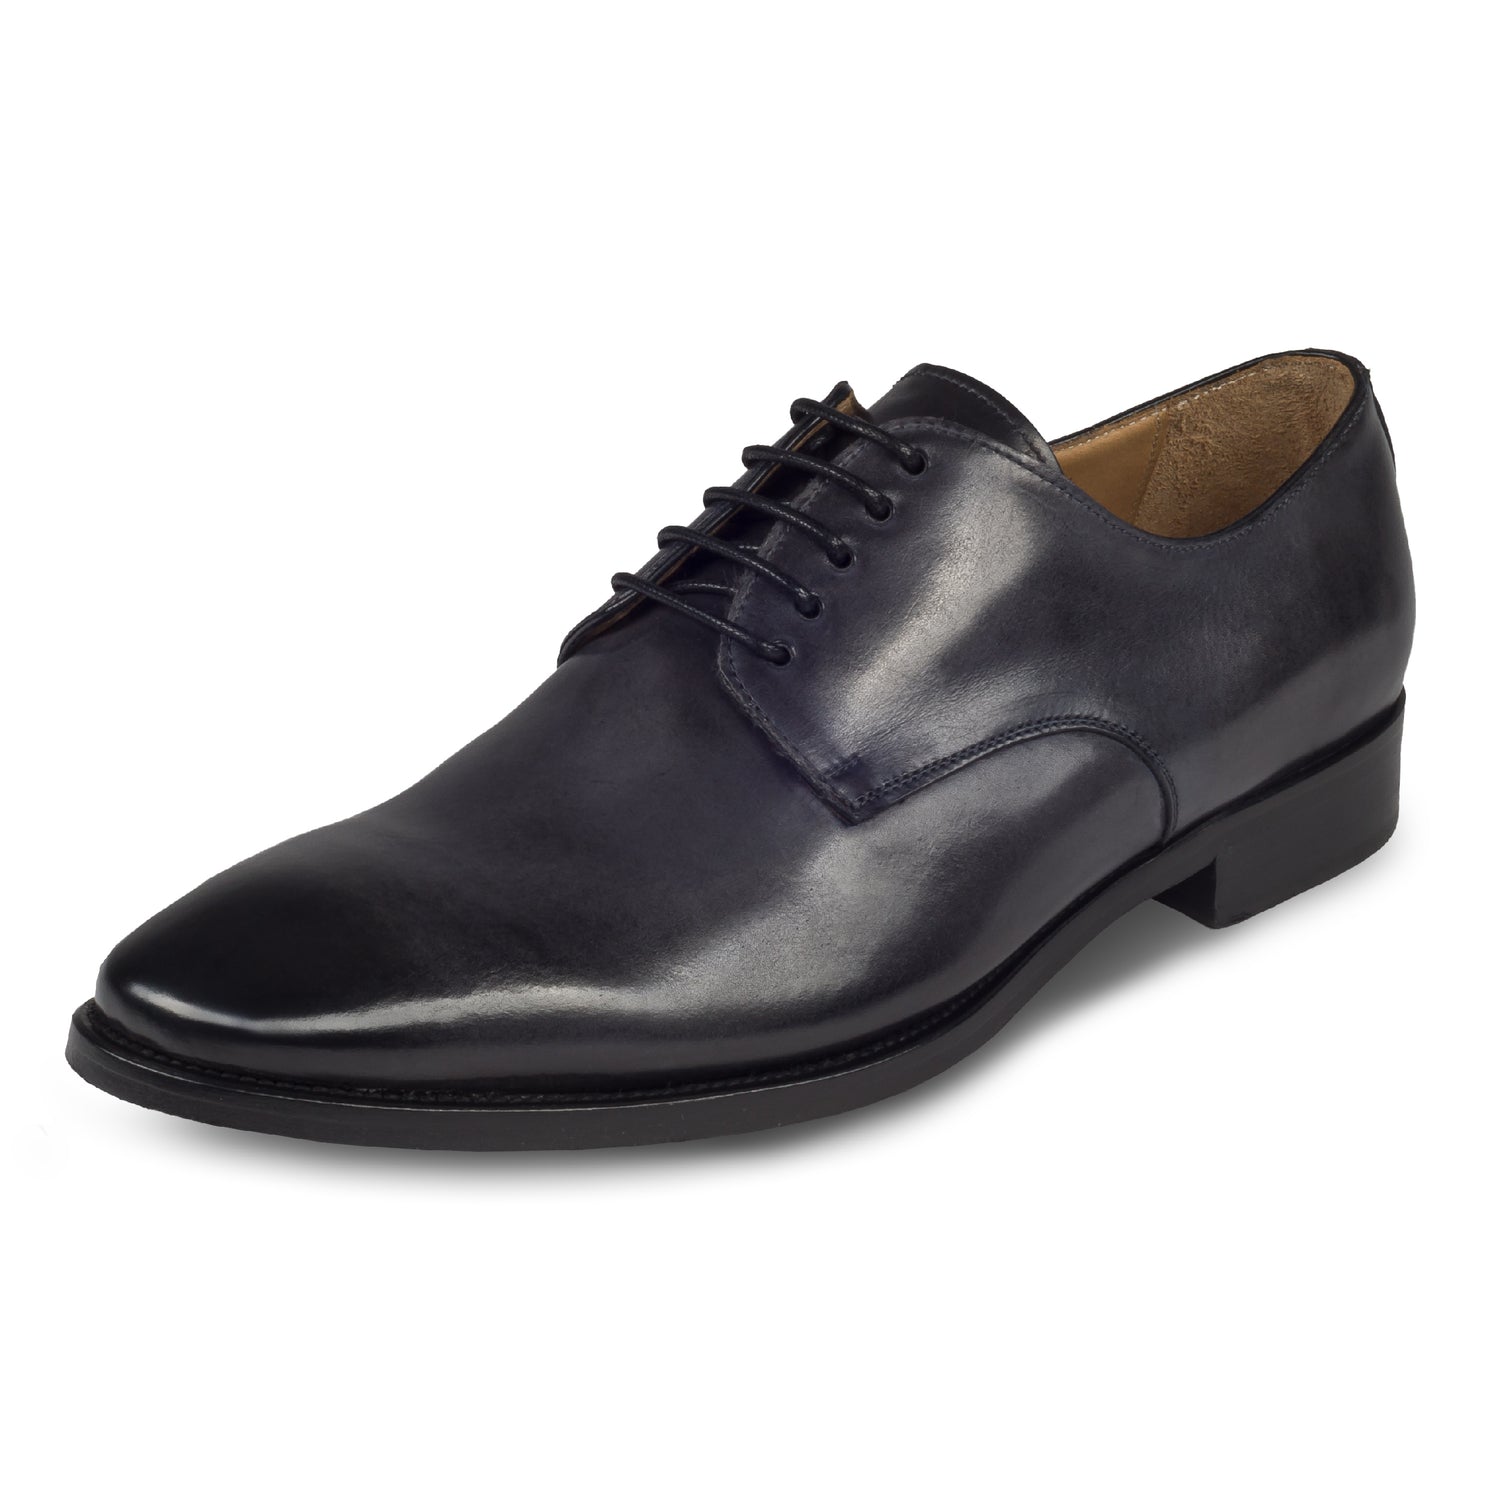 BRECOS – Italienische Herren Anzugschuhe, Plain Derby Schnürer in dunkel grau. Handgefertigt und durchgenäht. Schräge Ansicht linker Schuh.